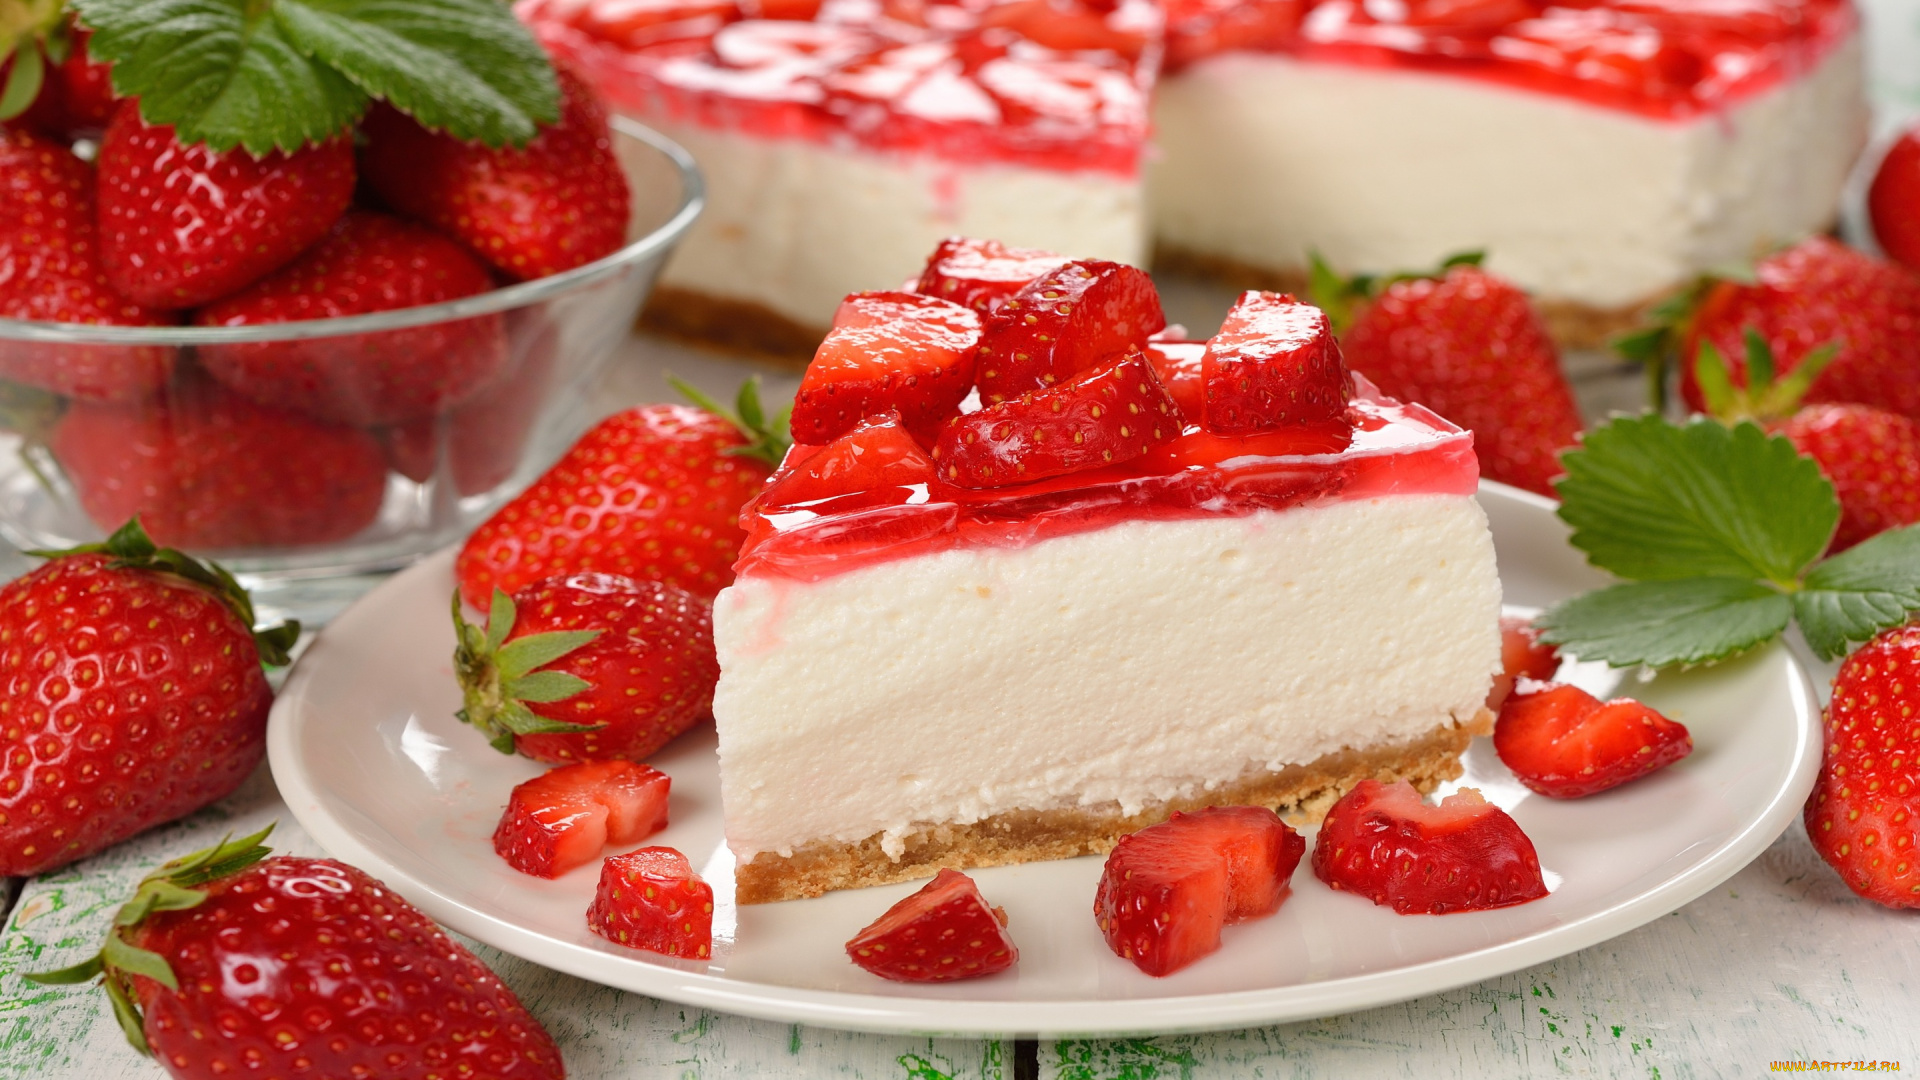 еда, торты, berries, cake, sweet, dessert, клубника, ягоды, сладкое, десерт, выпечка, торт, пирожное, strawberry